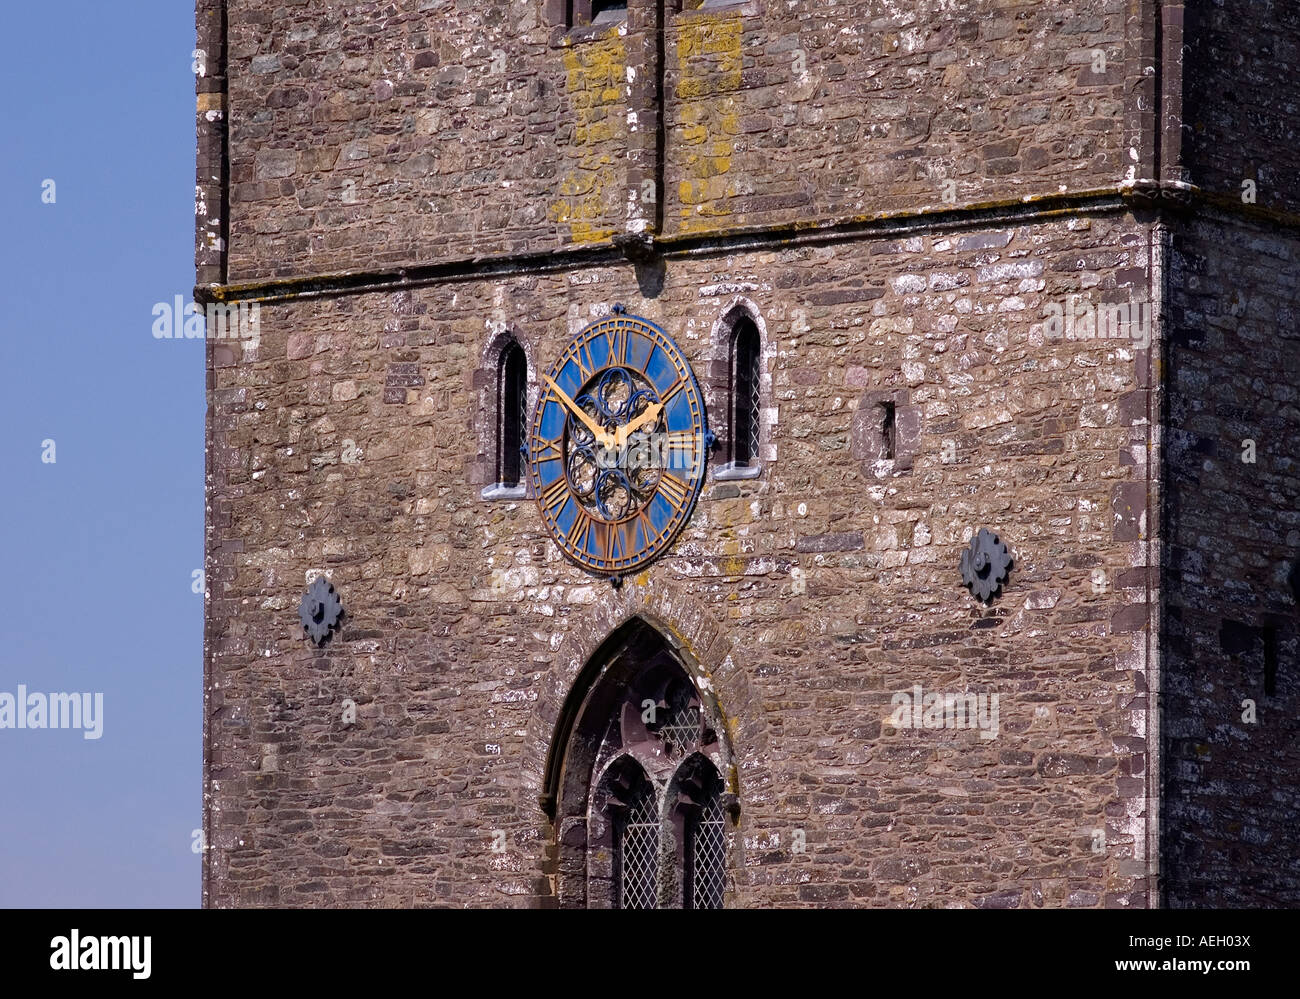 Tour de l'horloge et cadran de la cathédrale St Davids dyfed, Pembrokeshire, Pays de Galles, au sud-ouest Nombre 2490 Banque D'Images